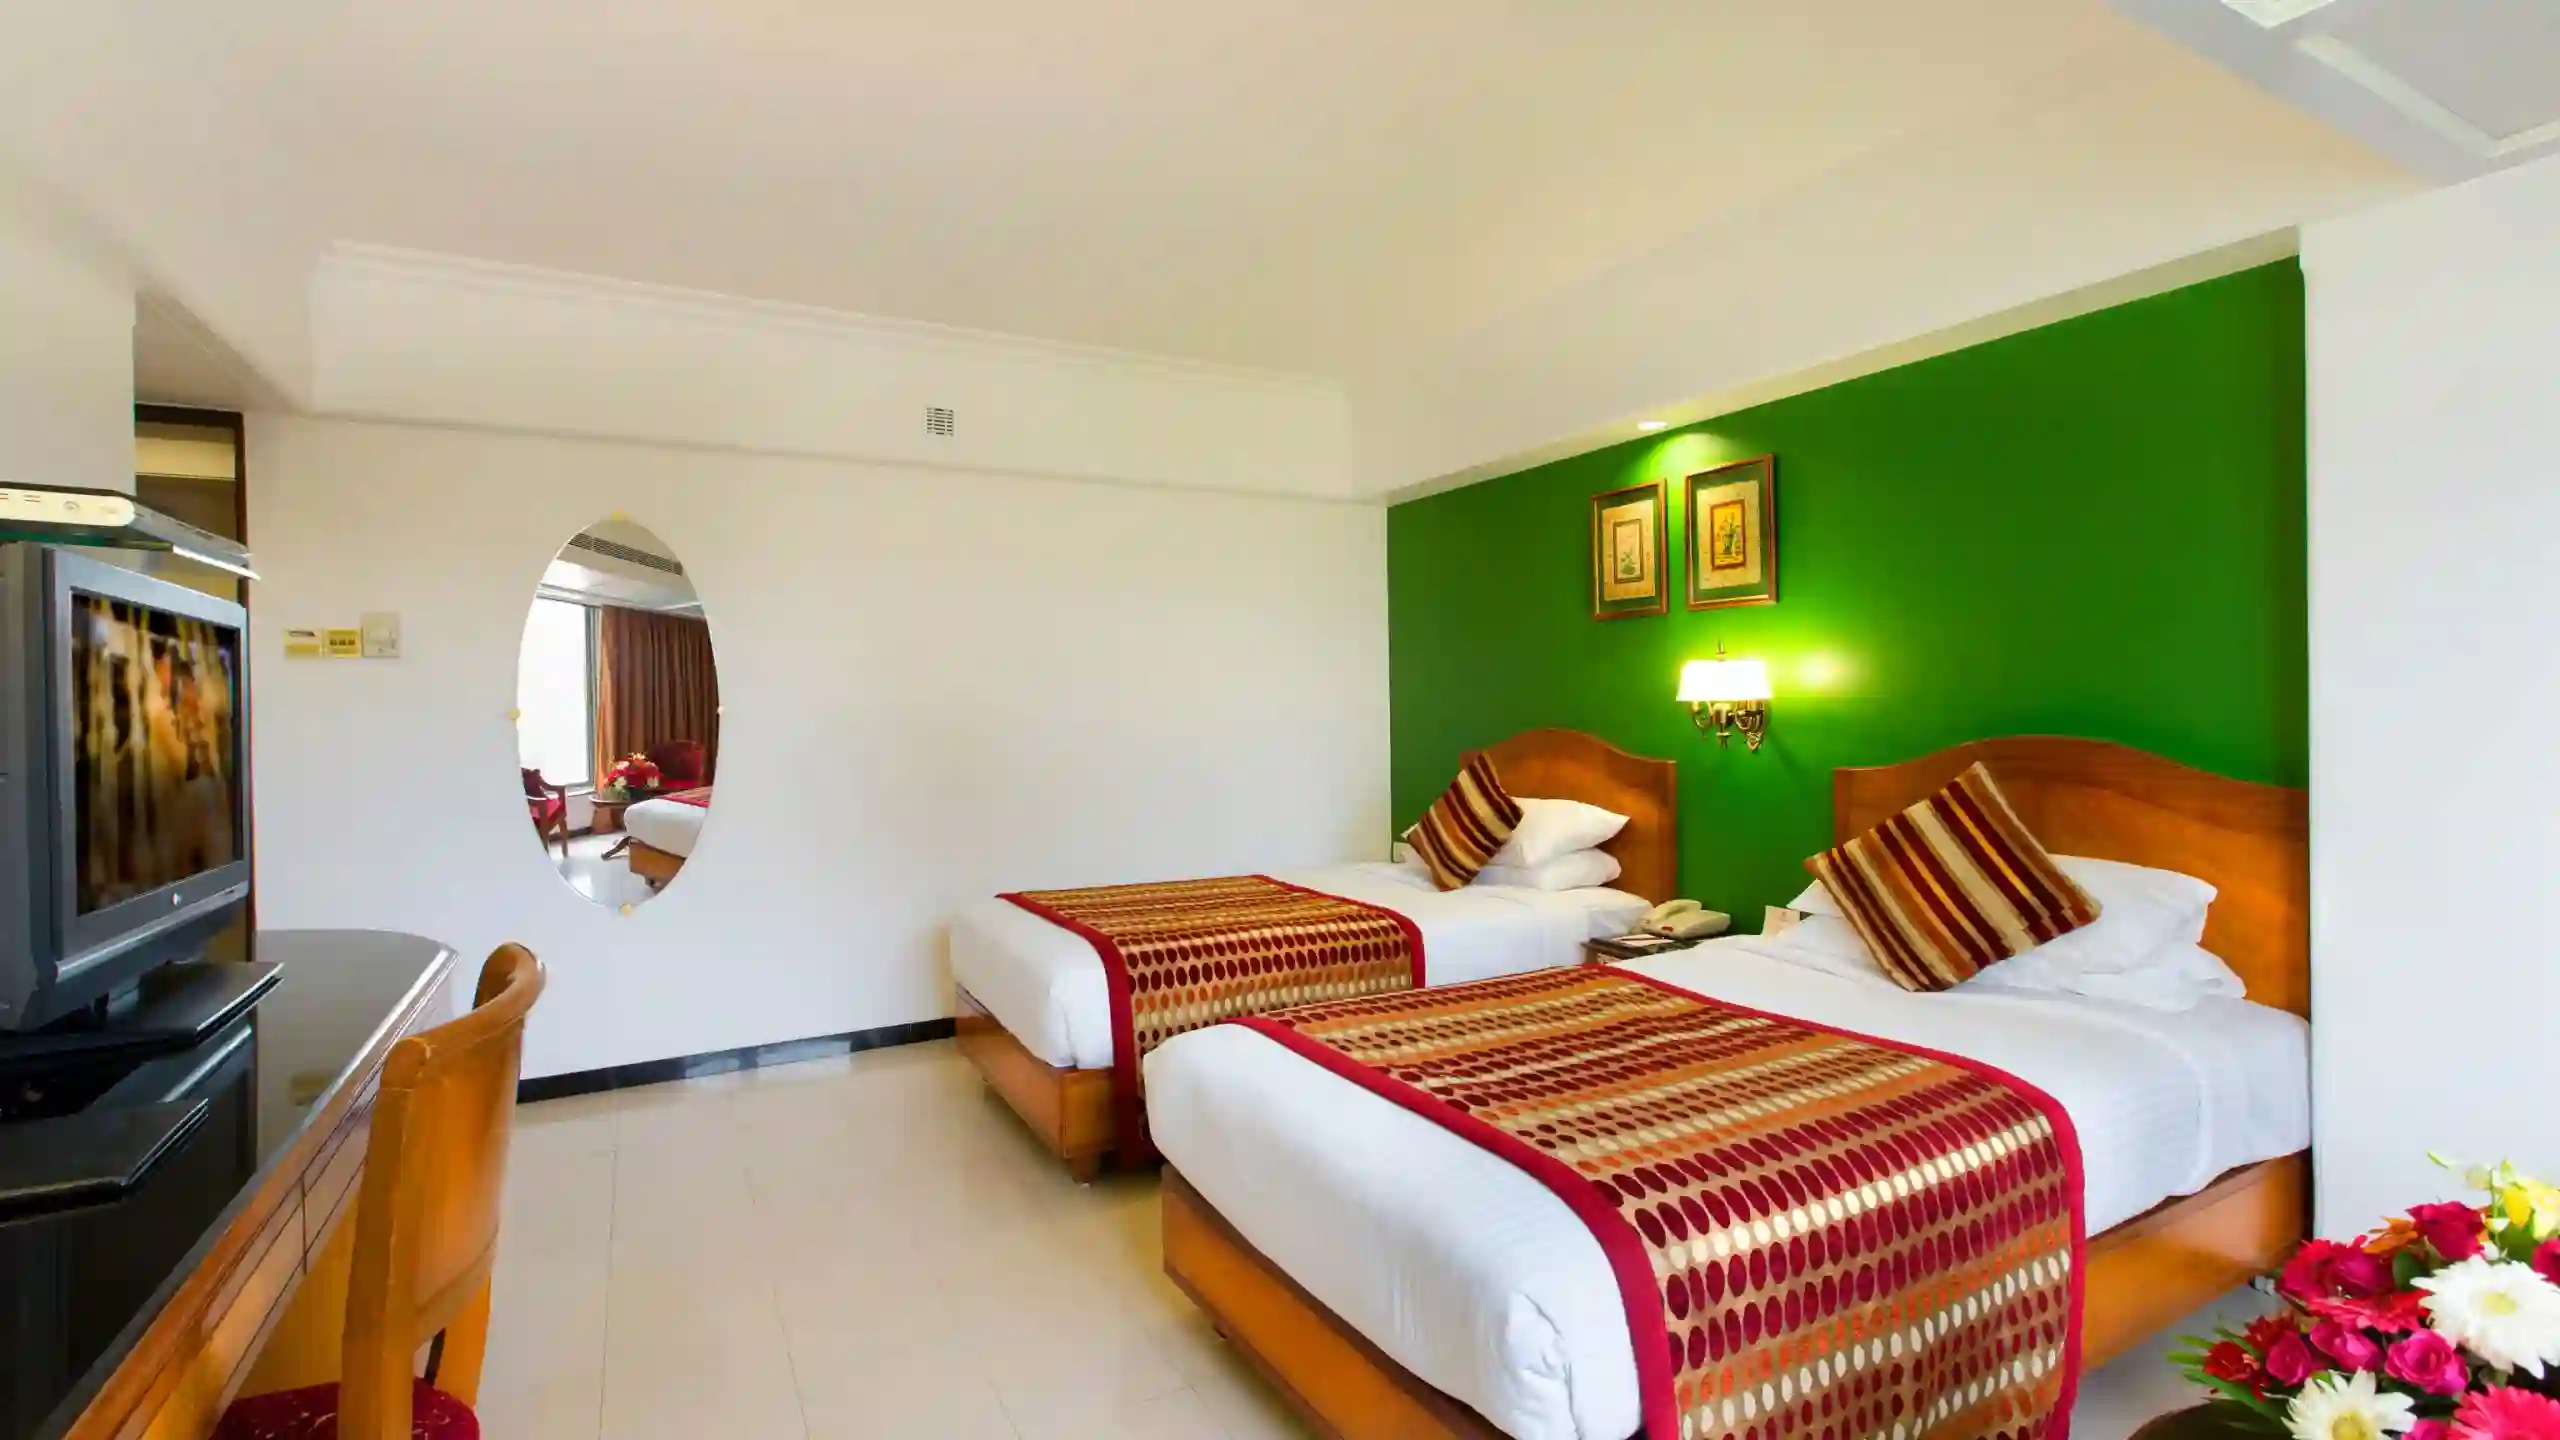 Club-room-Hotel in Dadar-Ramee Guestline